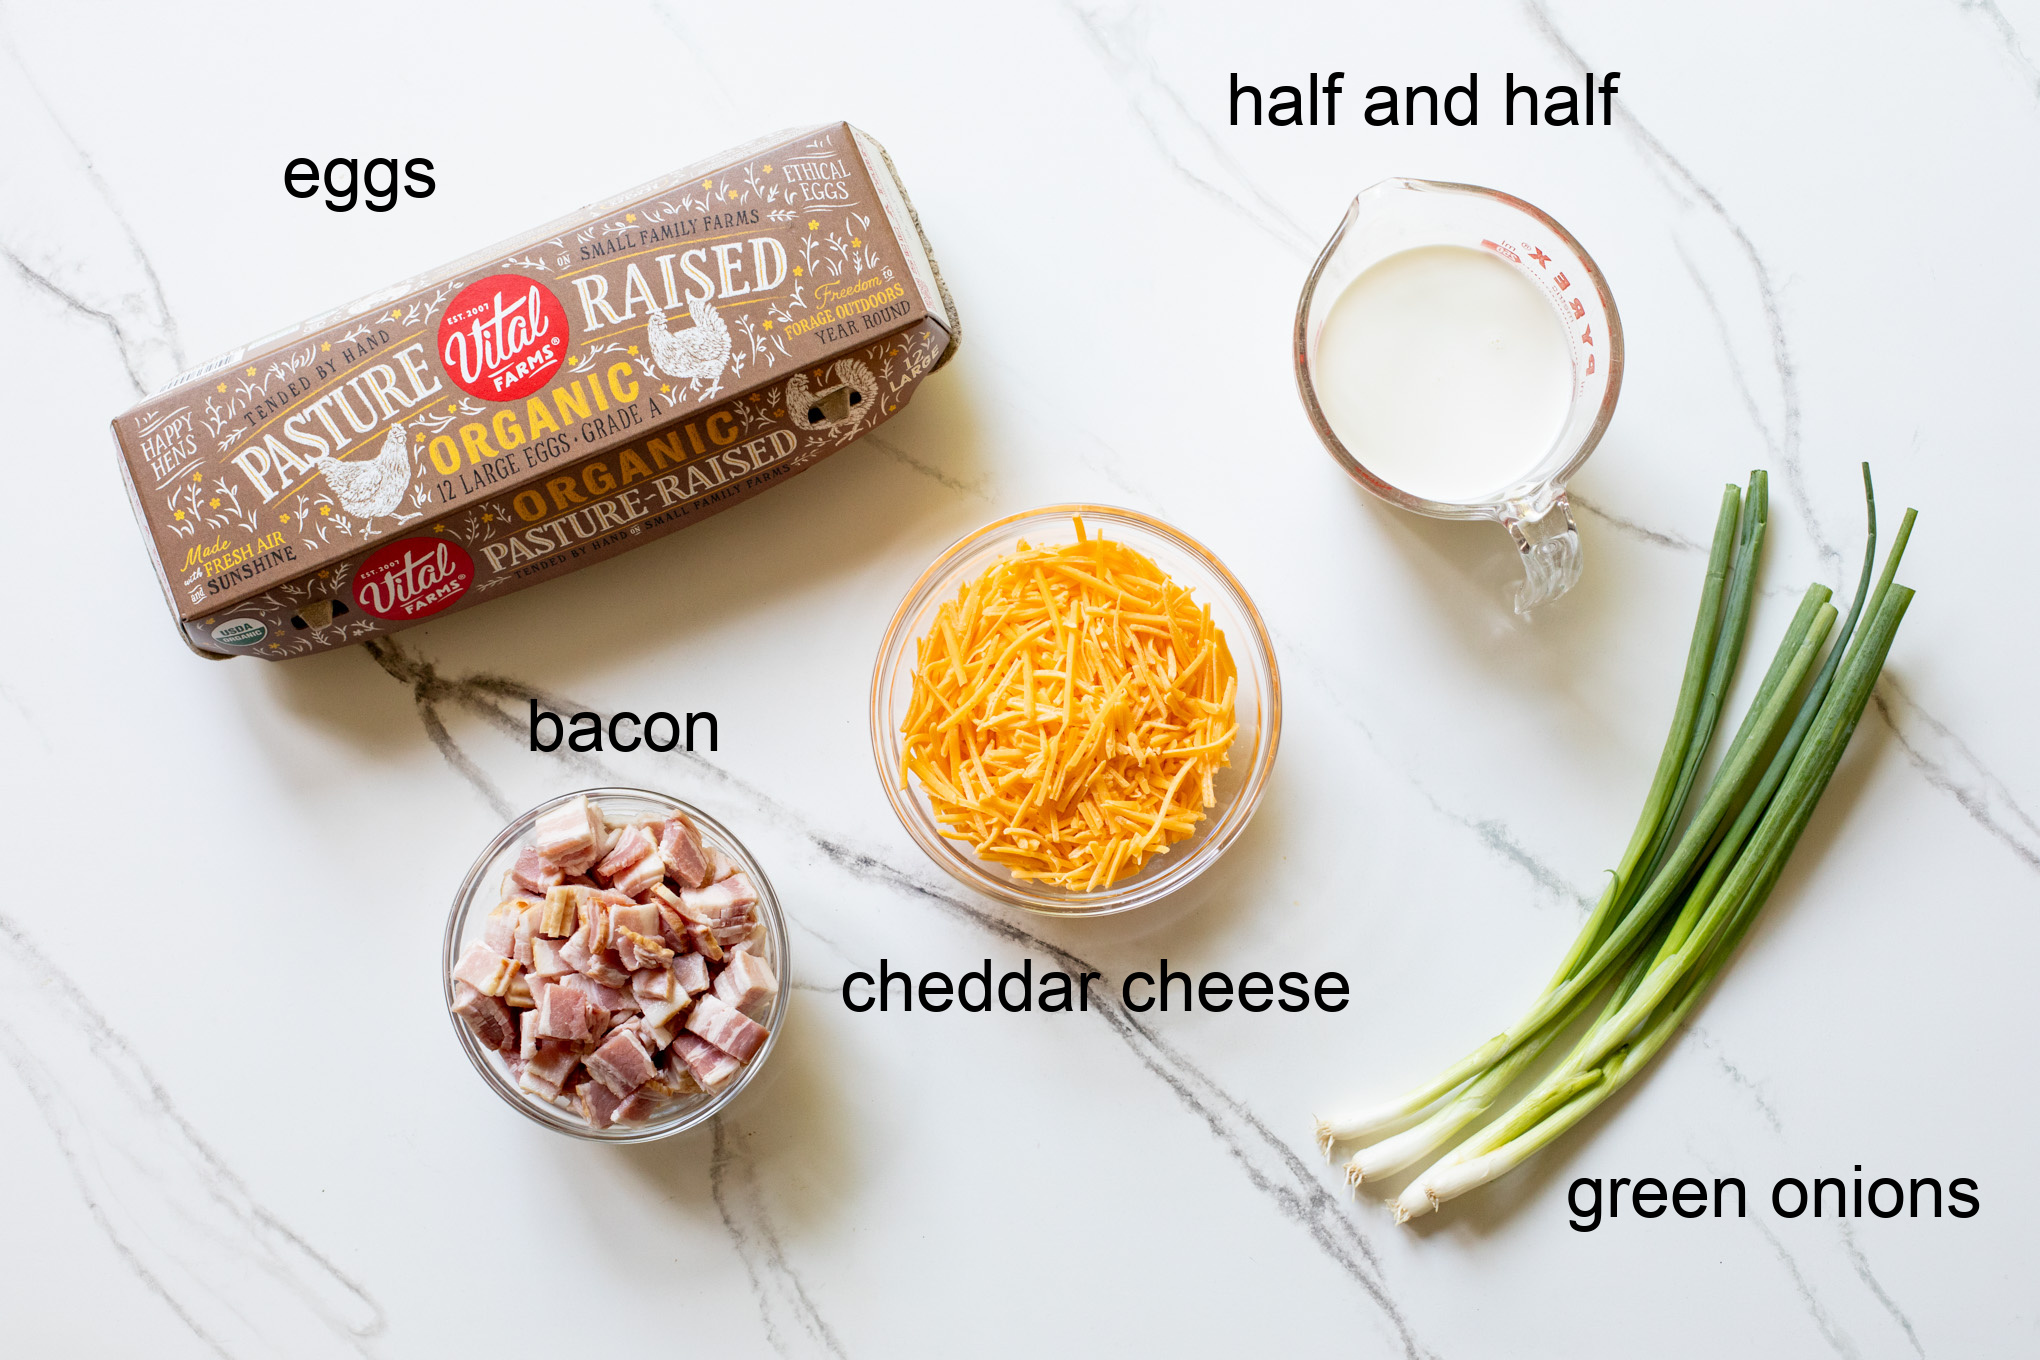 ingredients for breakfast casserole.